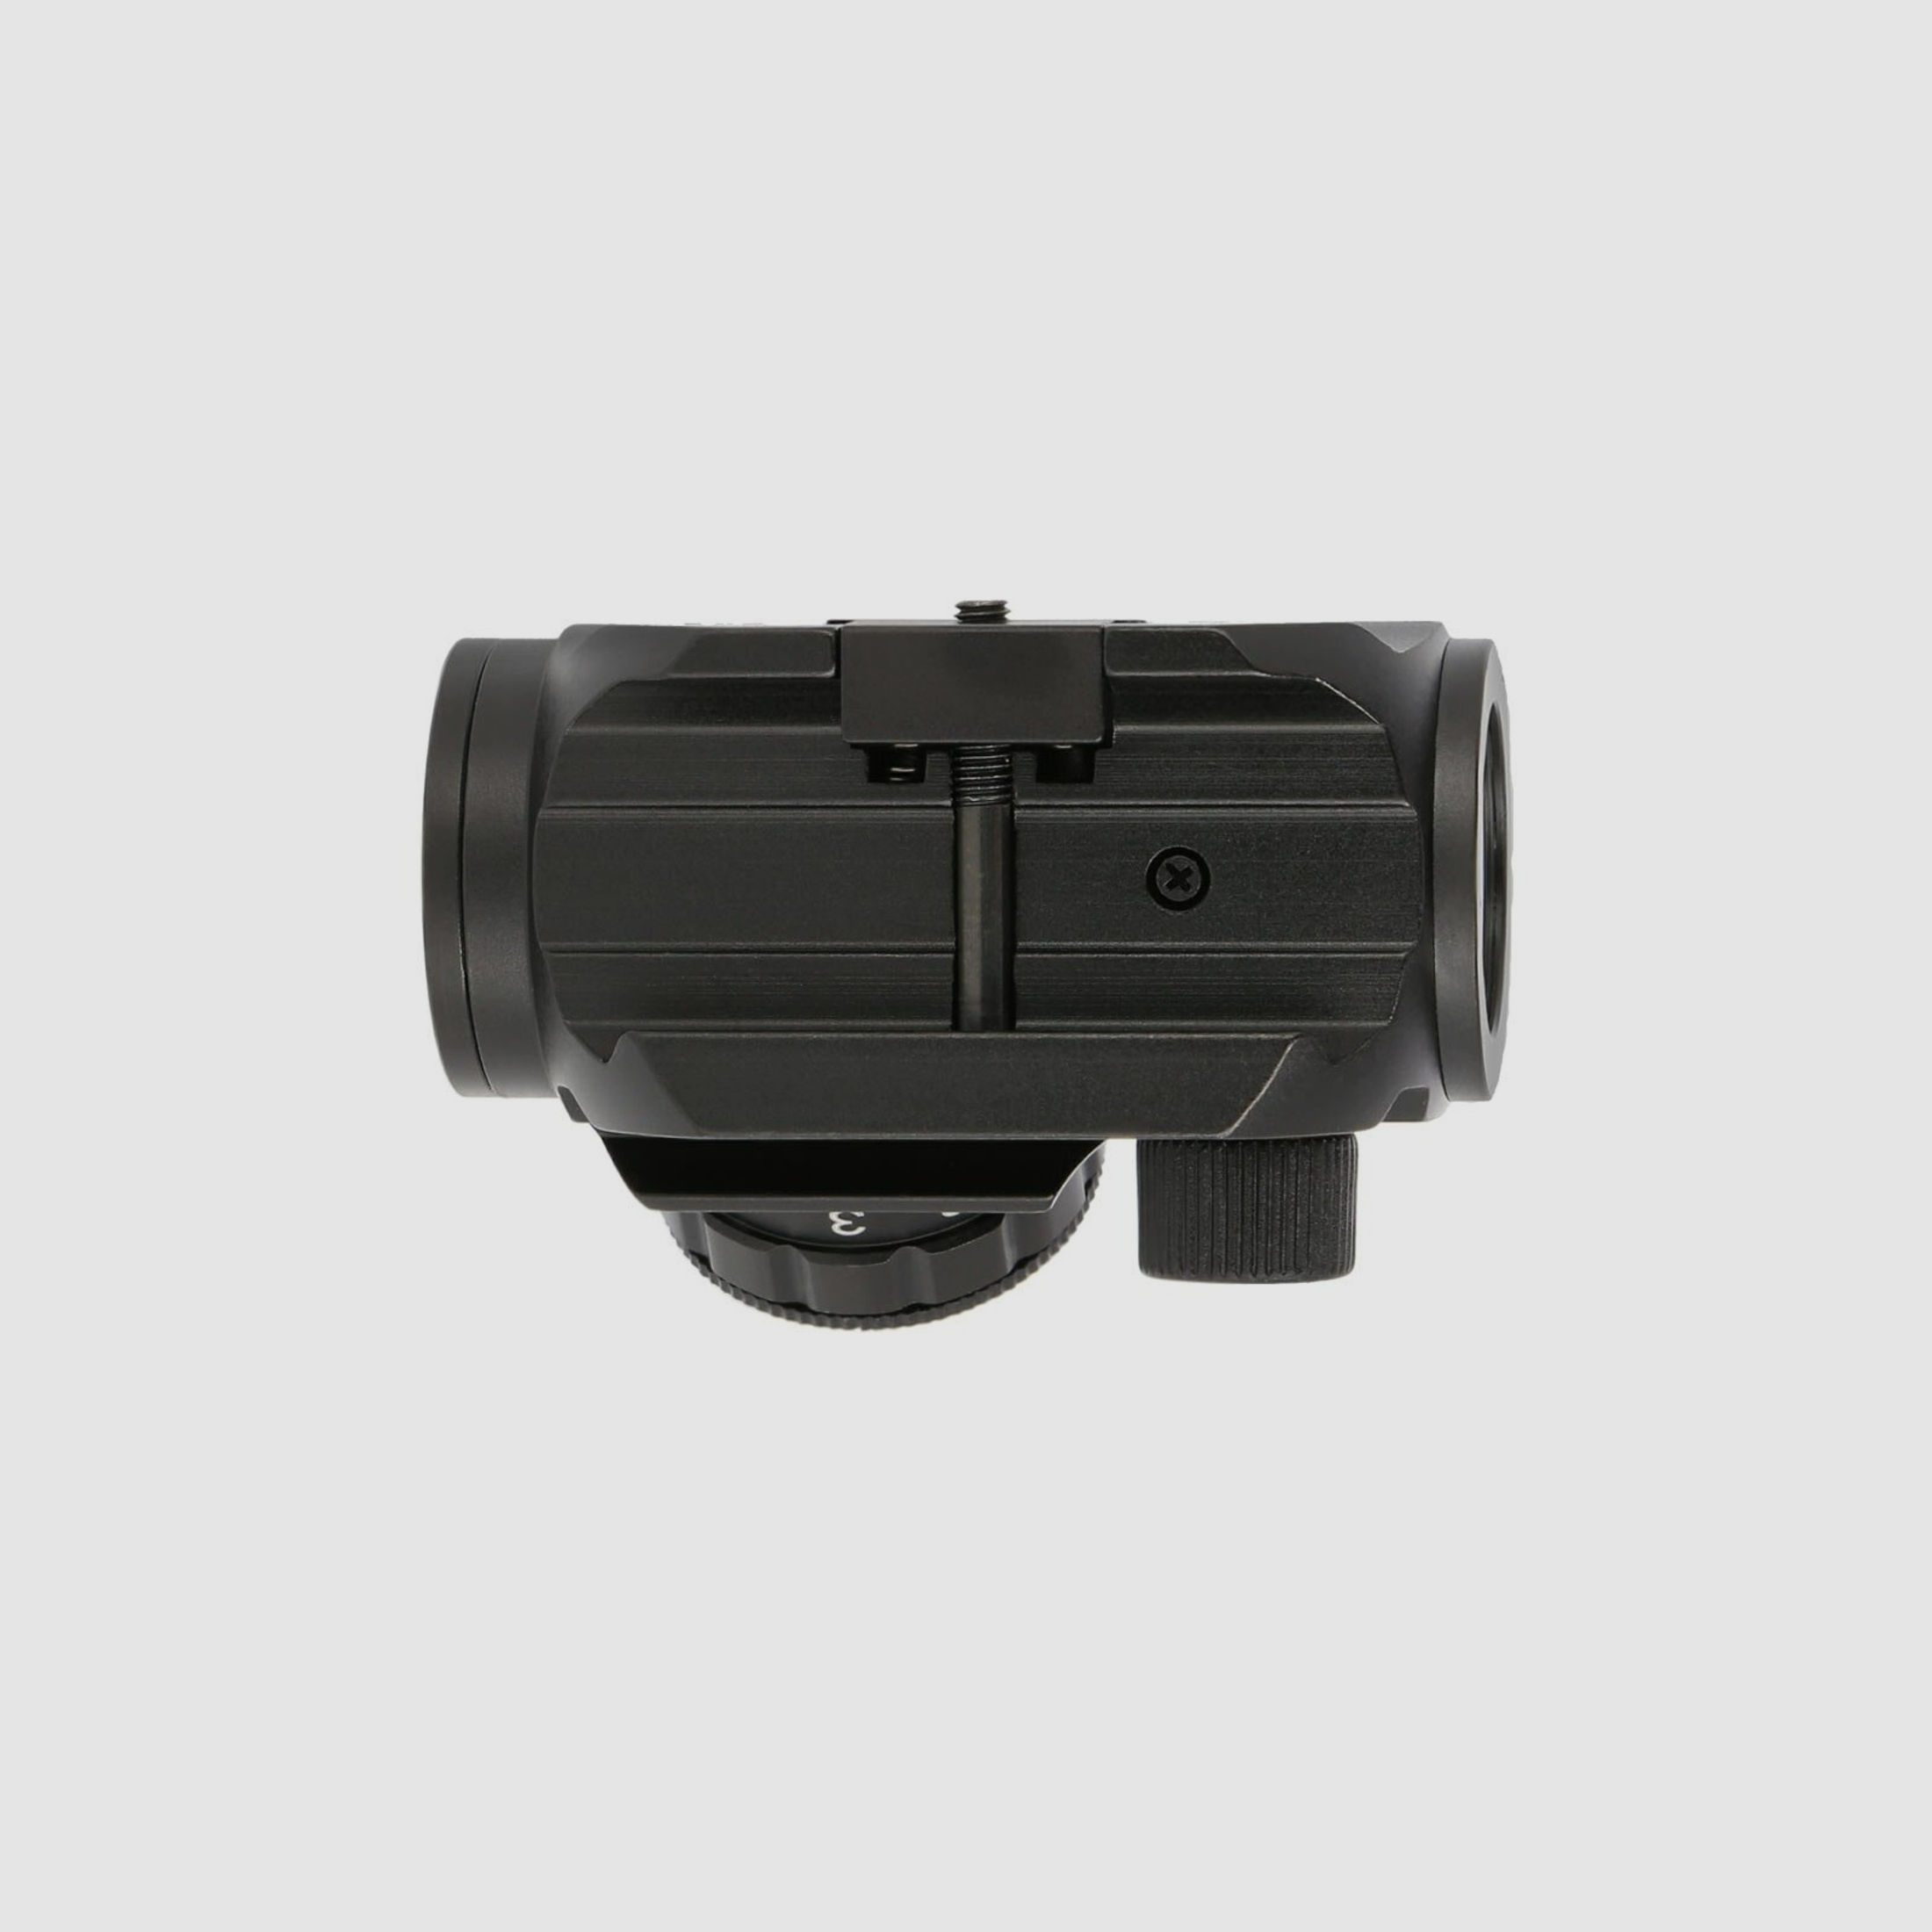 4komma5 HDM1K 1x28 Red Dot / Leuchtpunktvisier mit Weaver-Montage